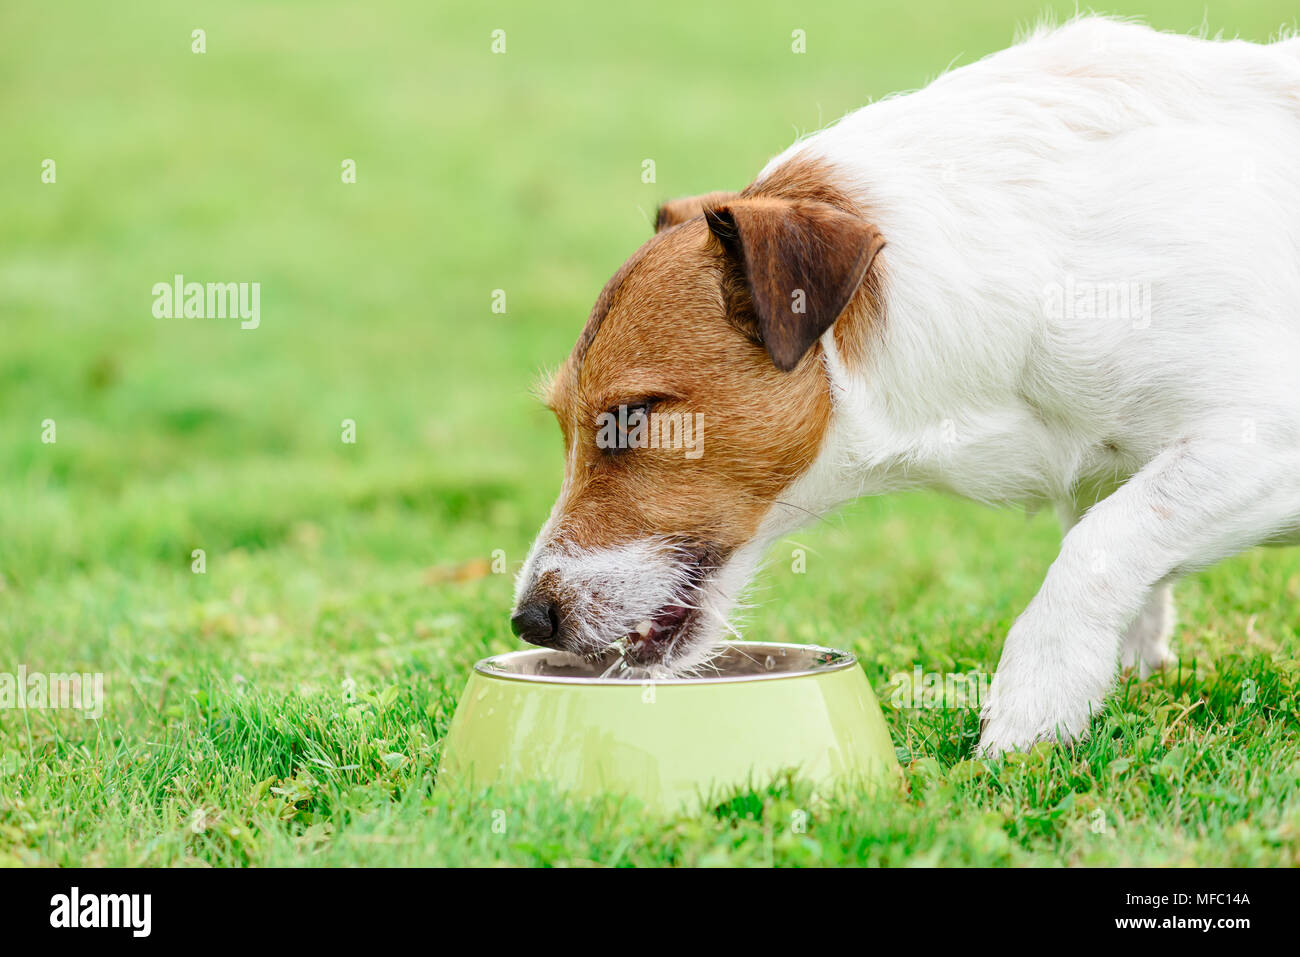 Durstigen hund Getränke Wasser aus PET-Schüssel am heißen Sommertag Stockfoto